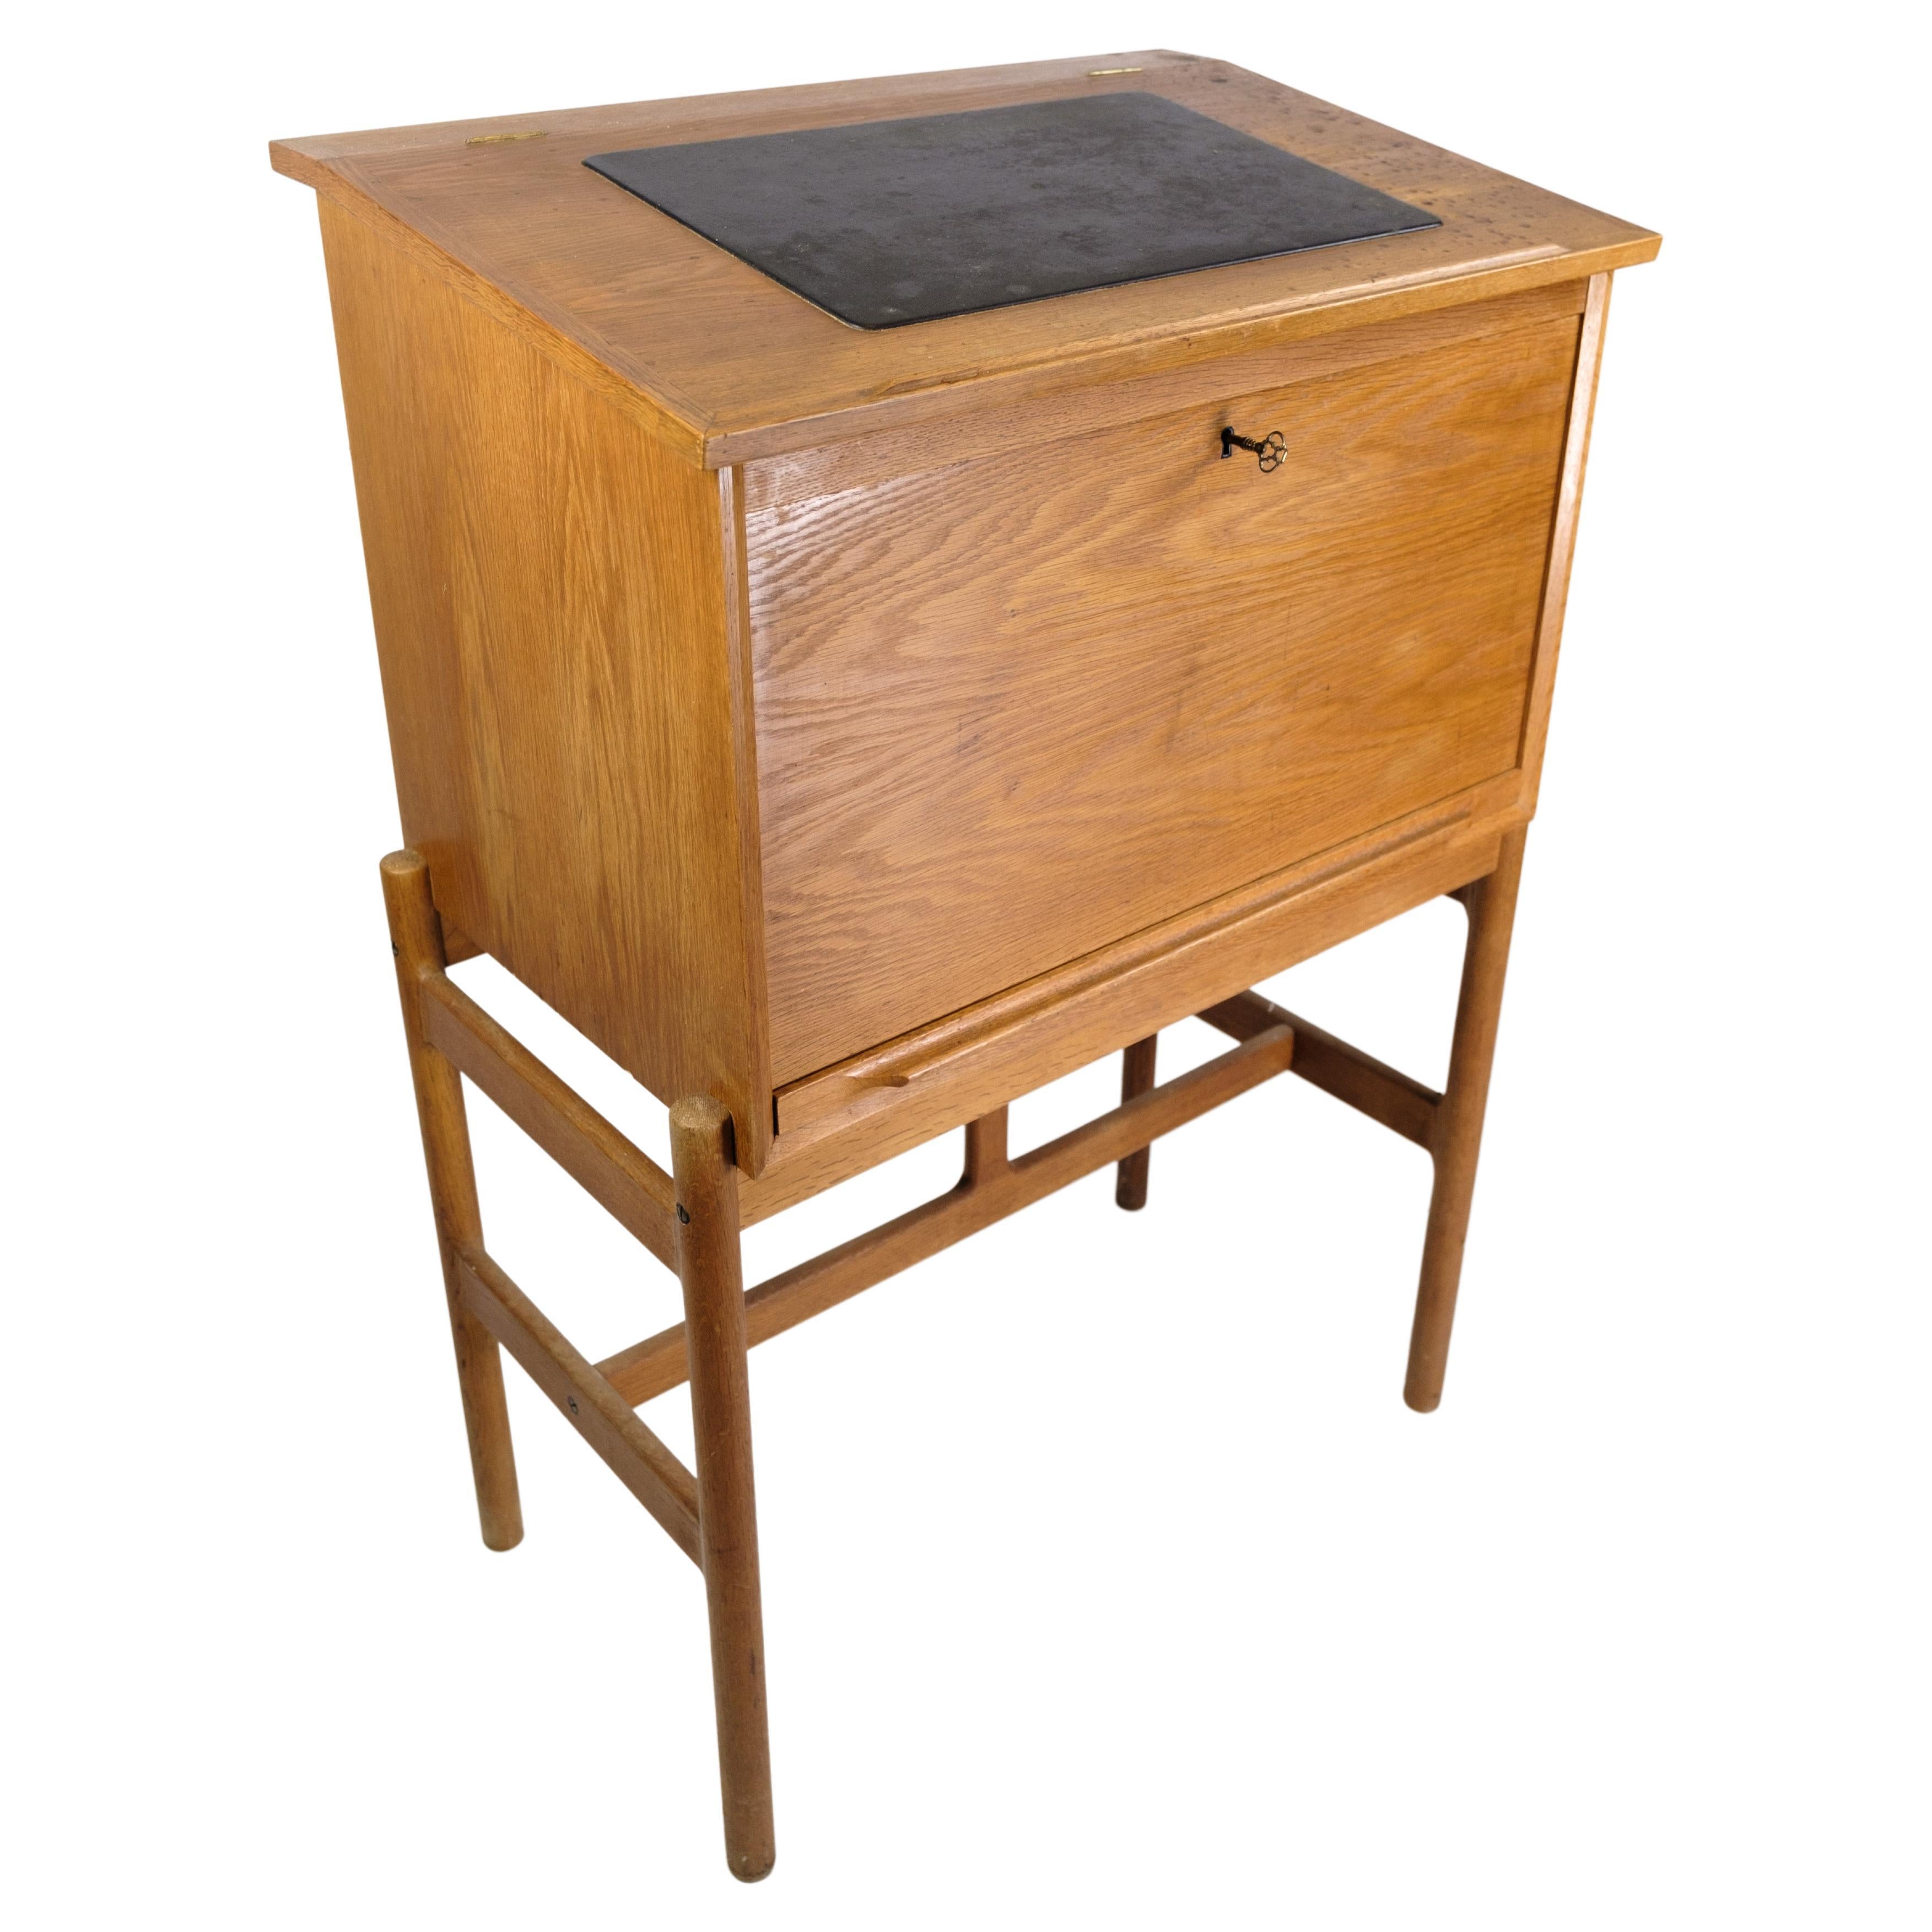 Dieser Schreibtisch aus Eichenholz, entworfen von Rosengran Hansen und hergestellt von Brande Møbelindustri in den 1960er Jahren, ist ein klassisches Beispiel für dänisches Möbeldesign. Mit seiner zeitlosen Ausstrahlung und seinem funktionalen